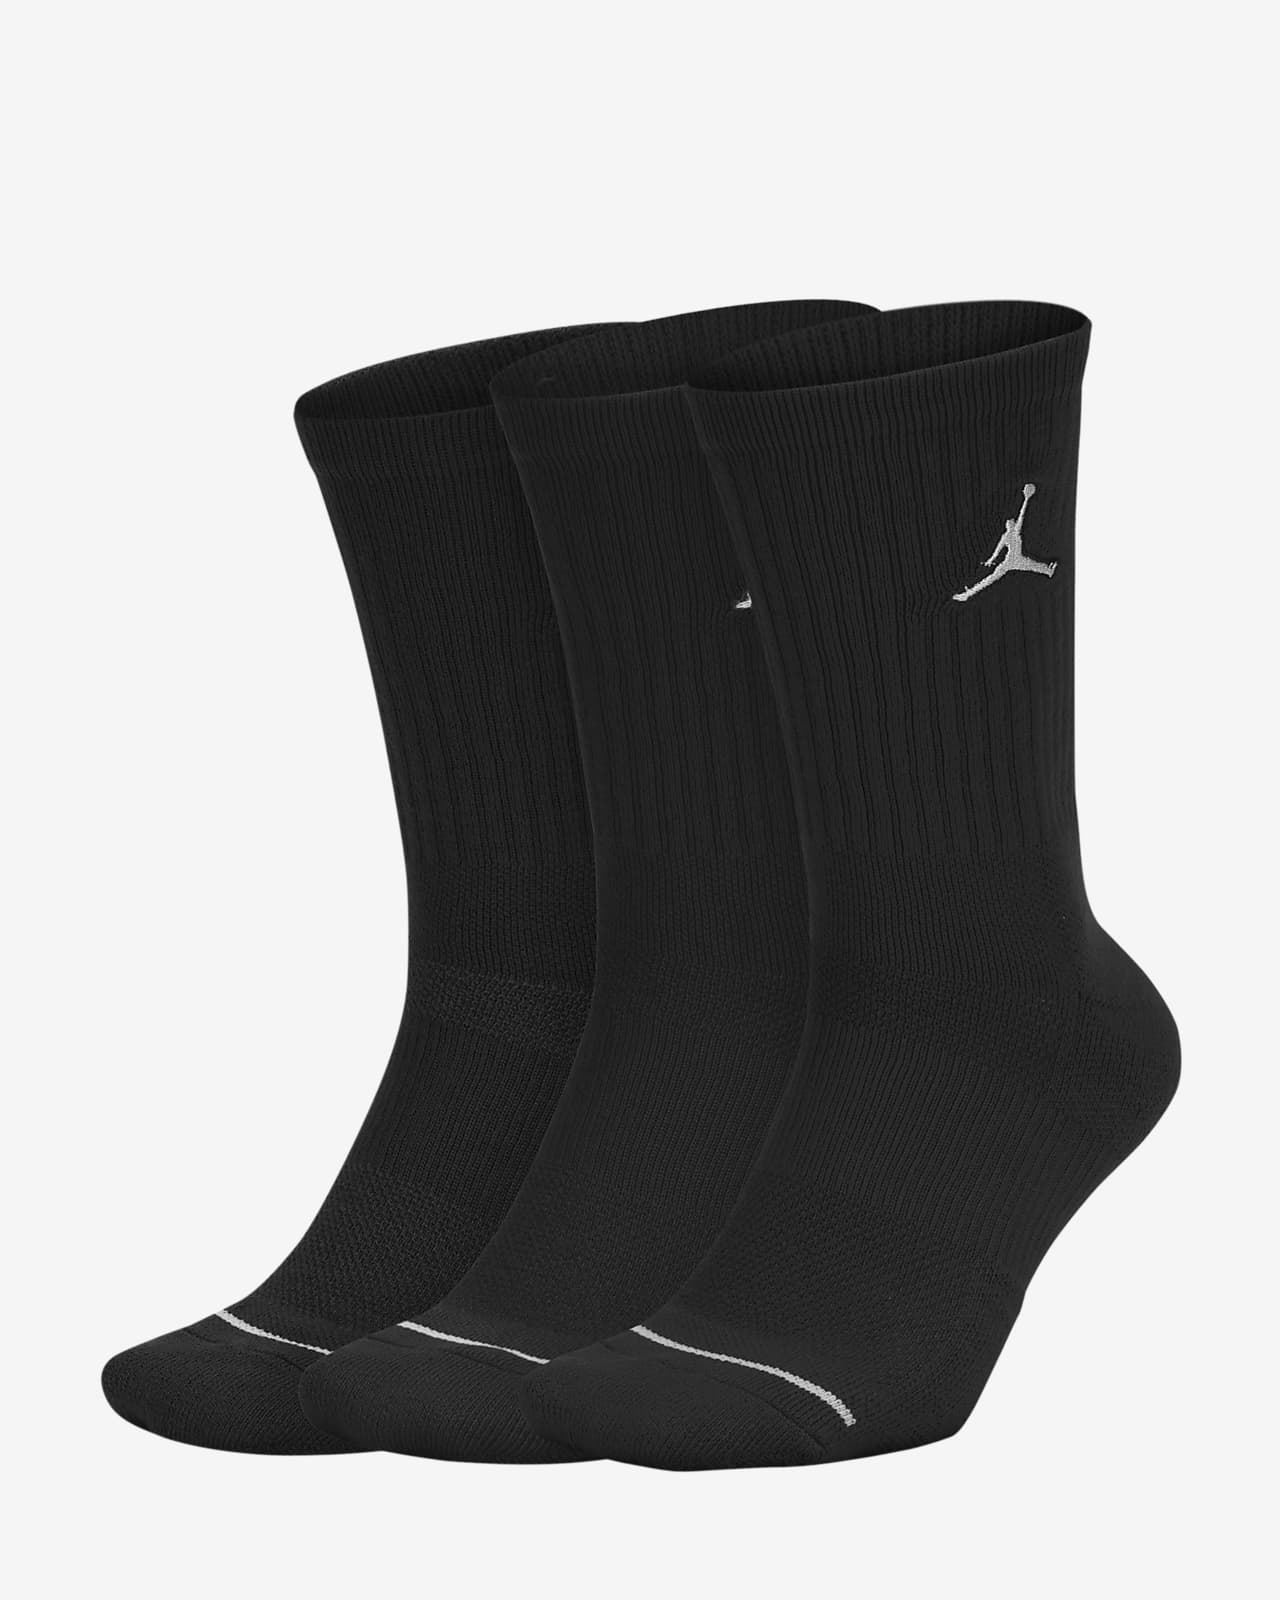 jordan black socks